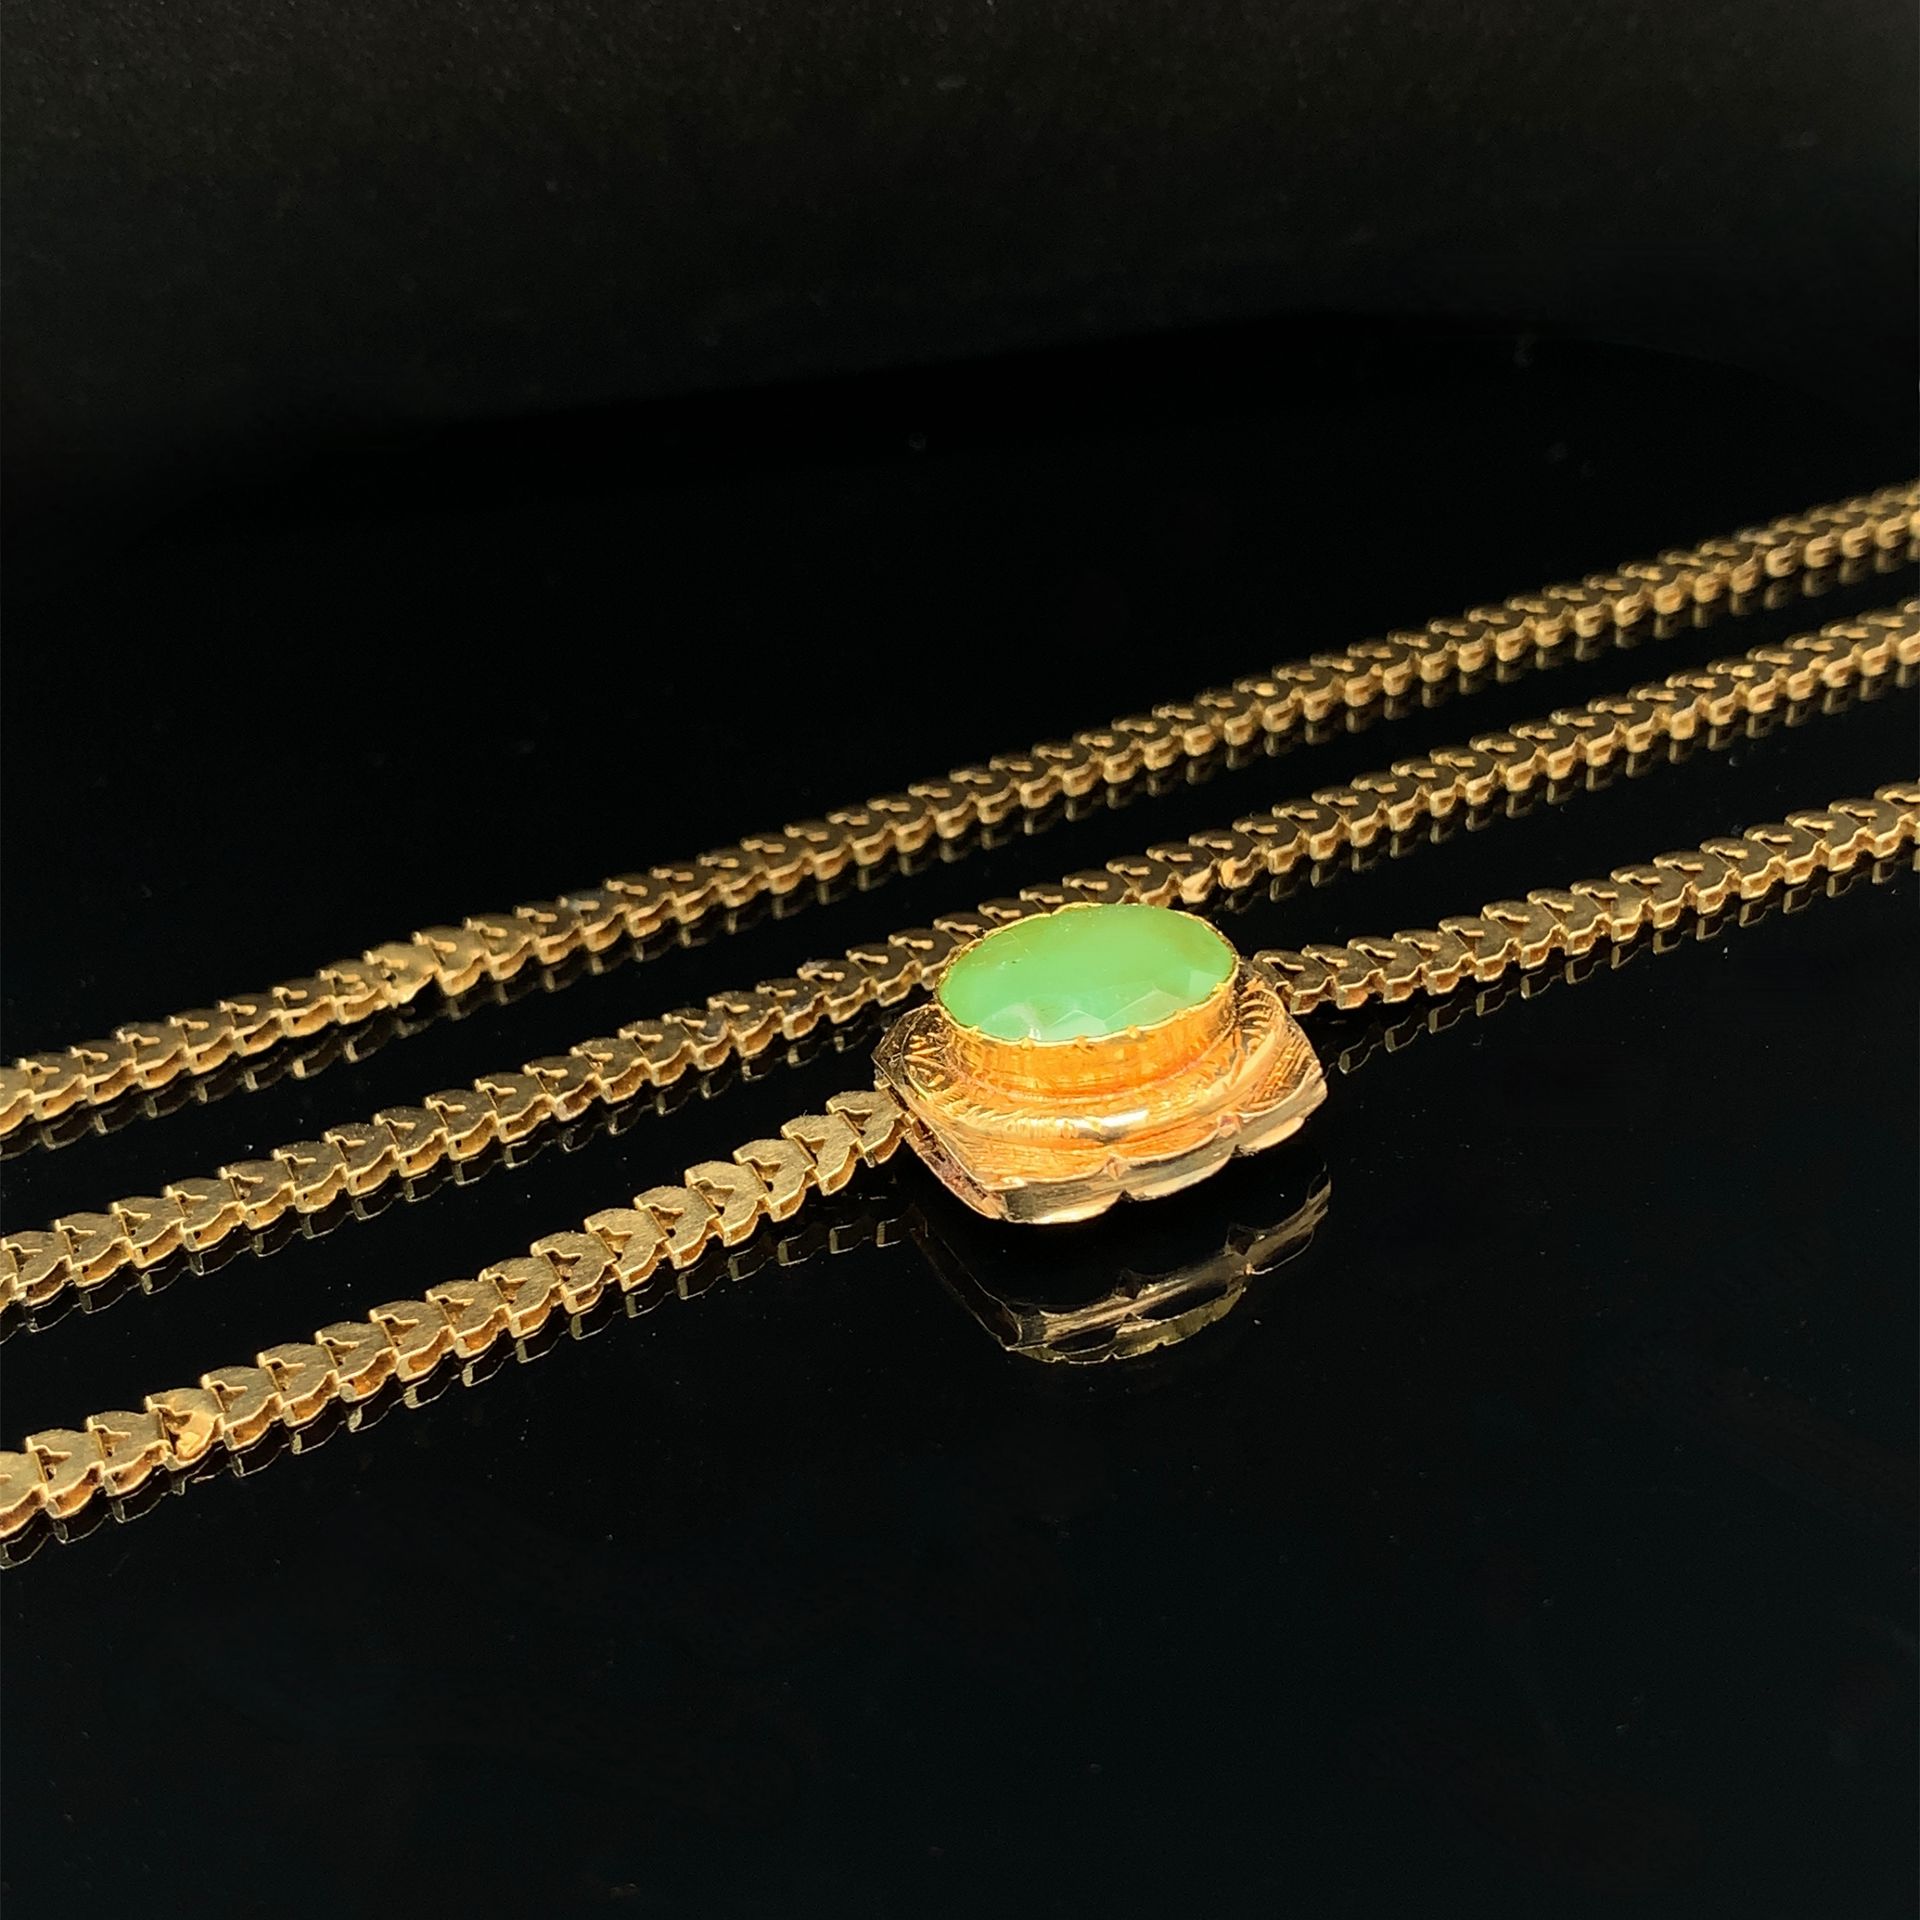 Null 玫瑰金(750‰)平网状 "帷幕 "项链，上面有一个镶嵌着绿色宝石的凹槽吊坠。
长度：36 cm - 毛重：26.8 g